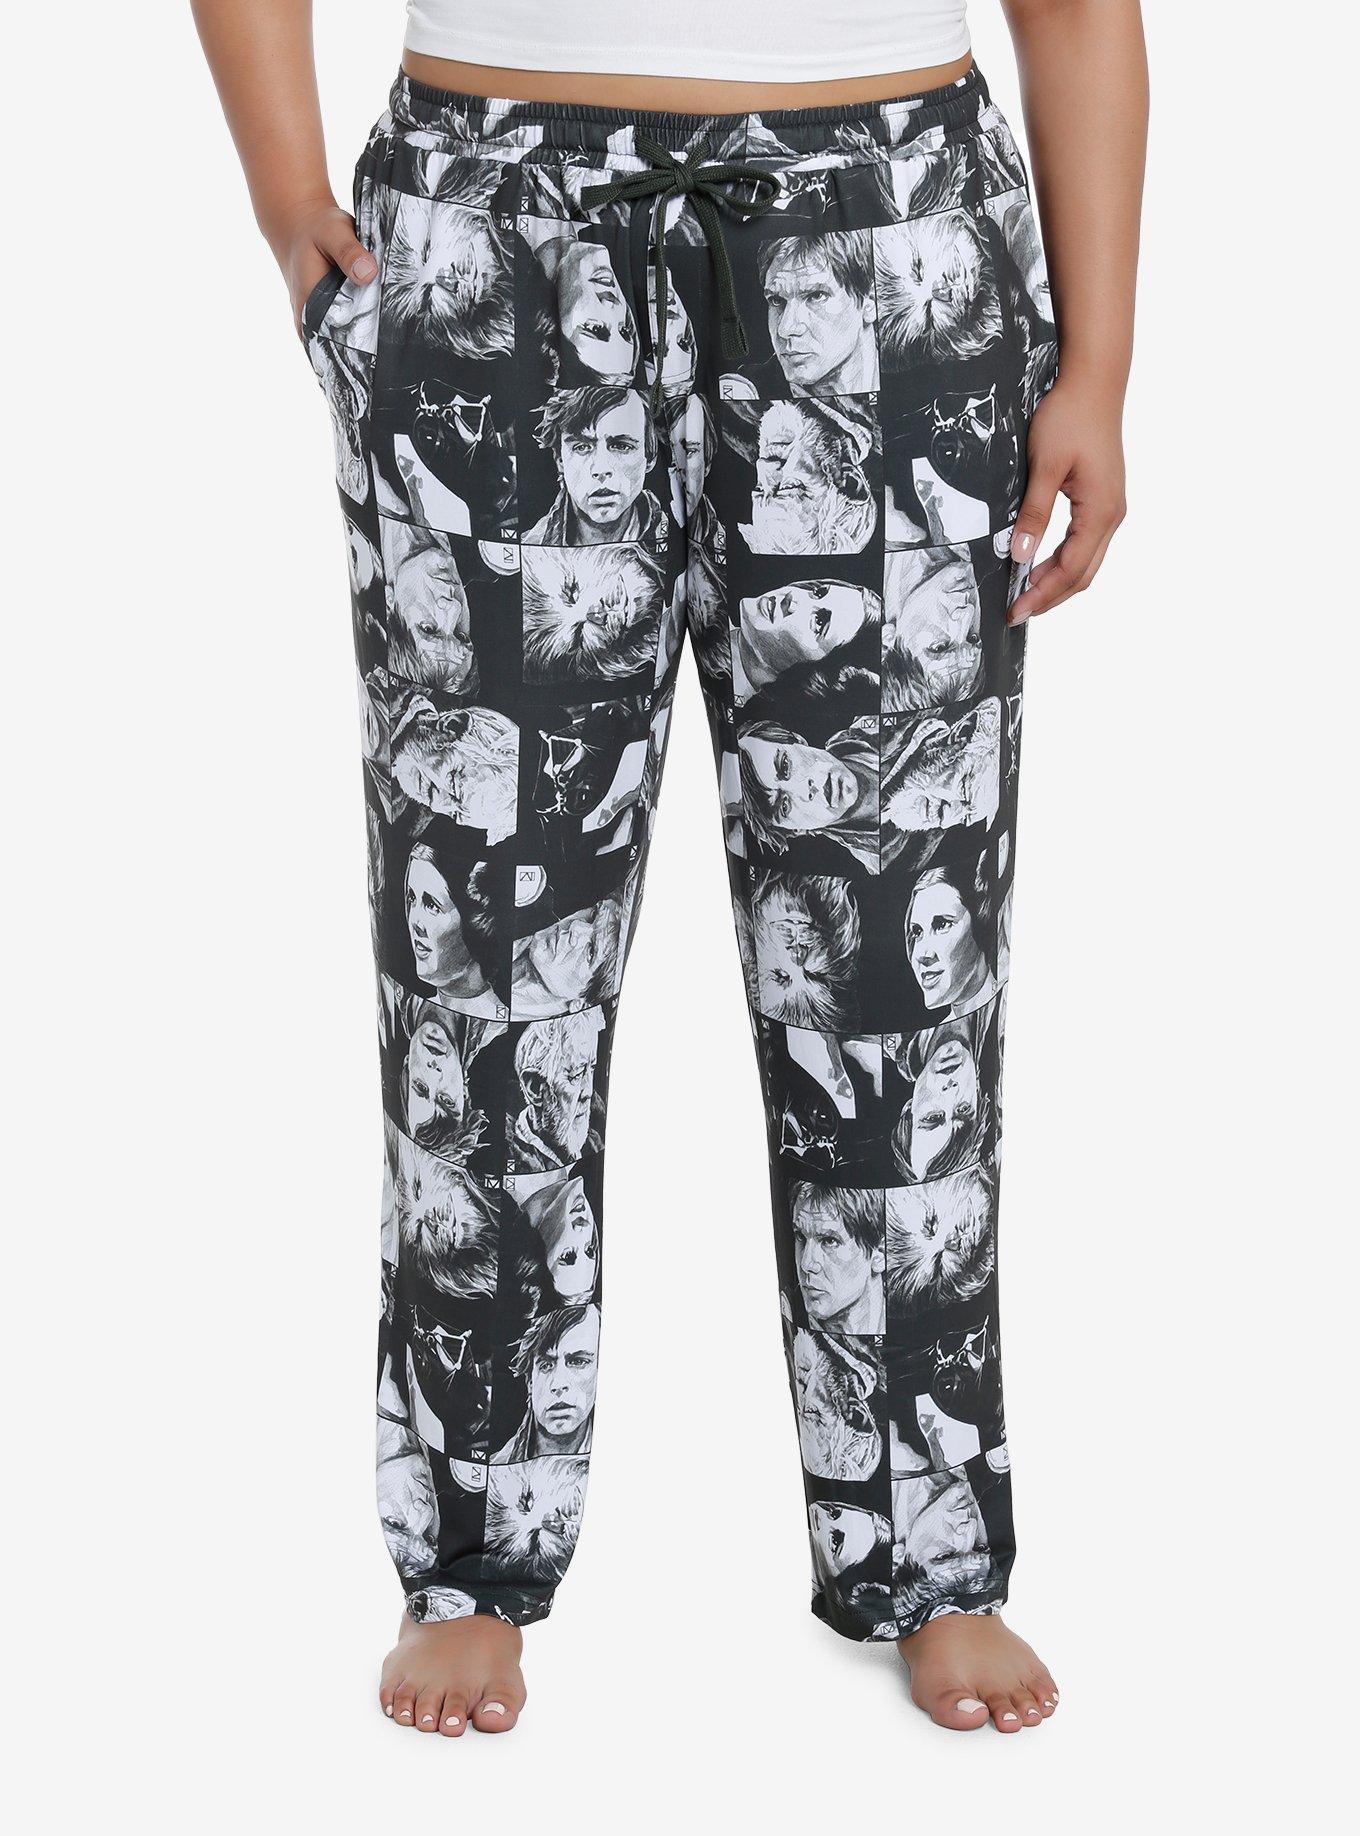 Star Wars Collage Pajama Pants Plus Size, , hi-res